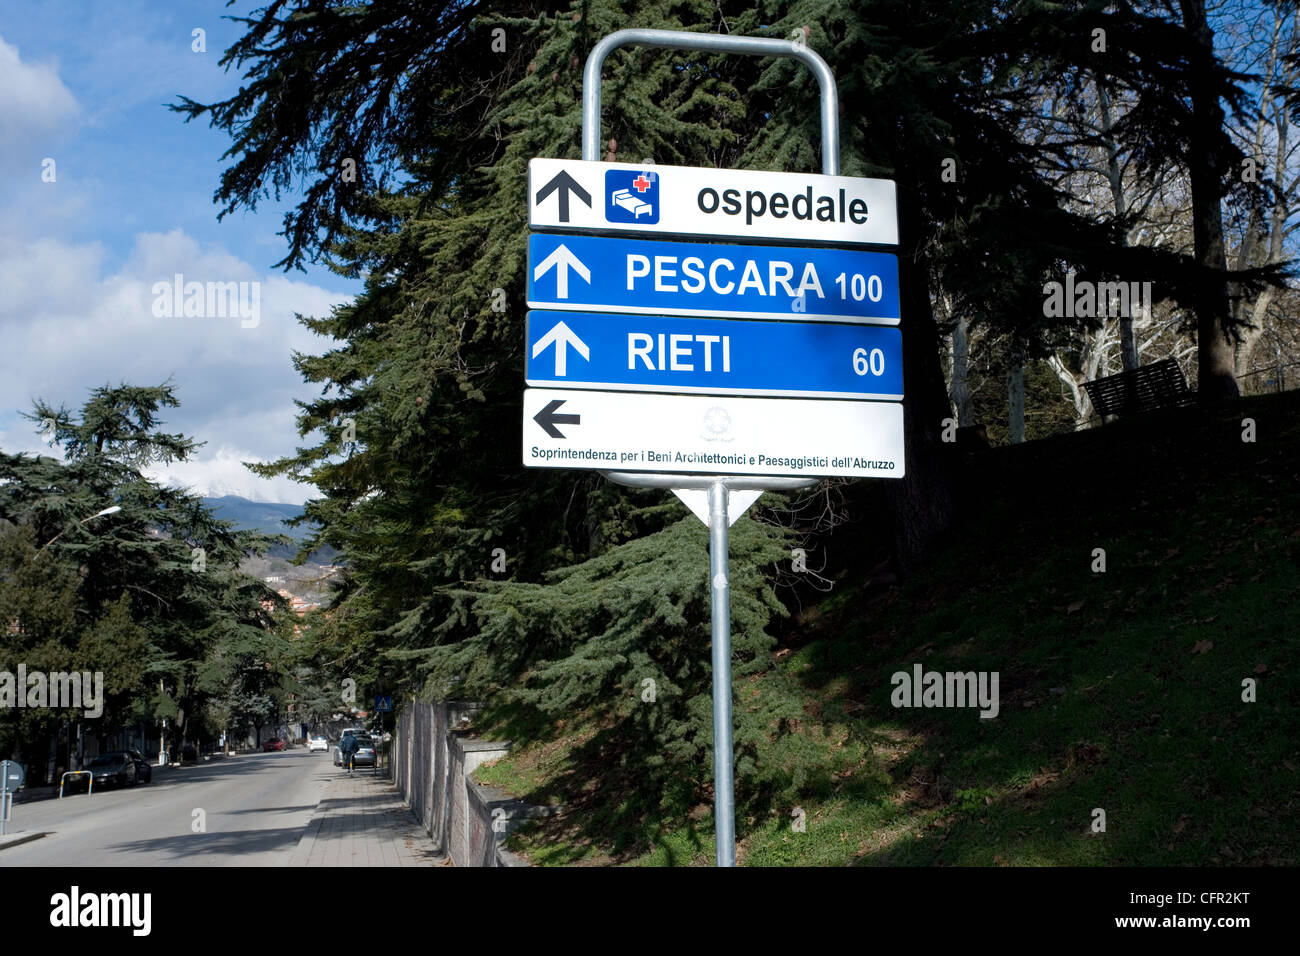 Italian road signage. Pescara,Rieti Stock Photo